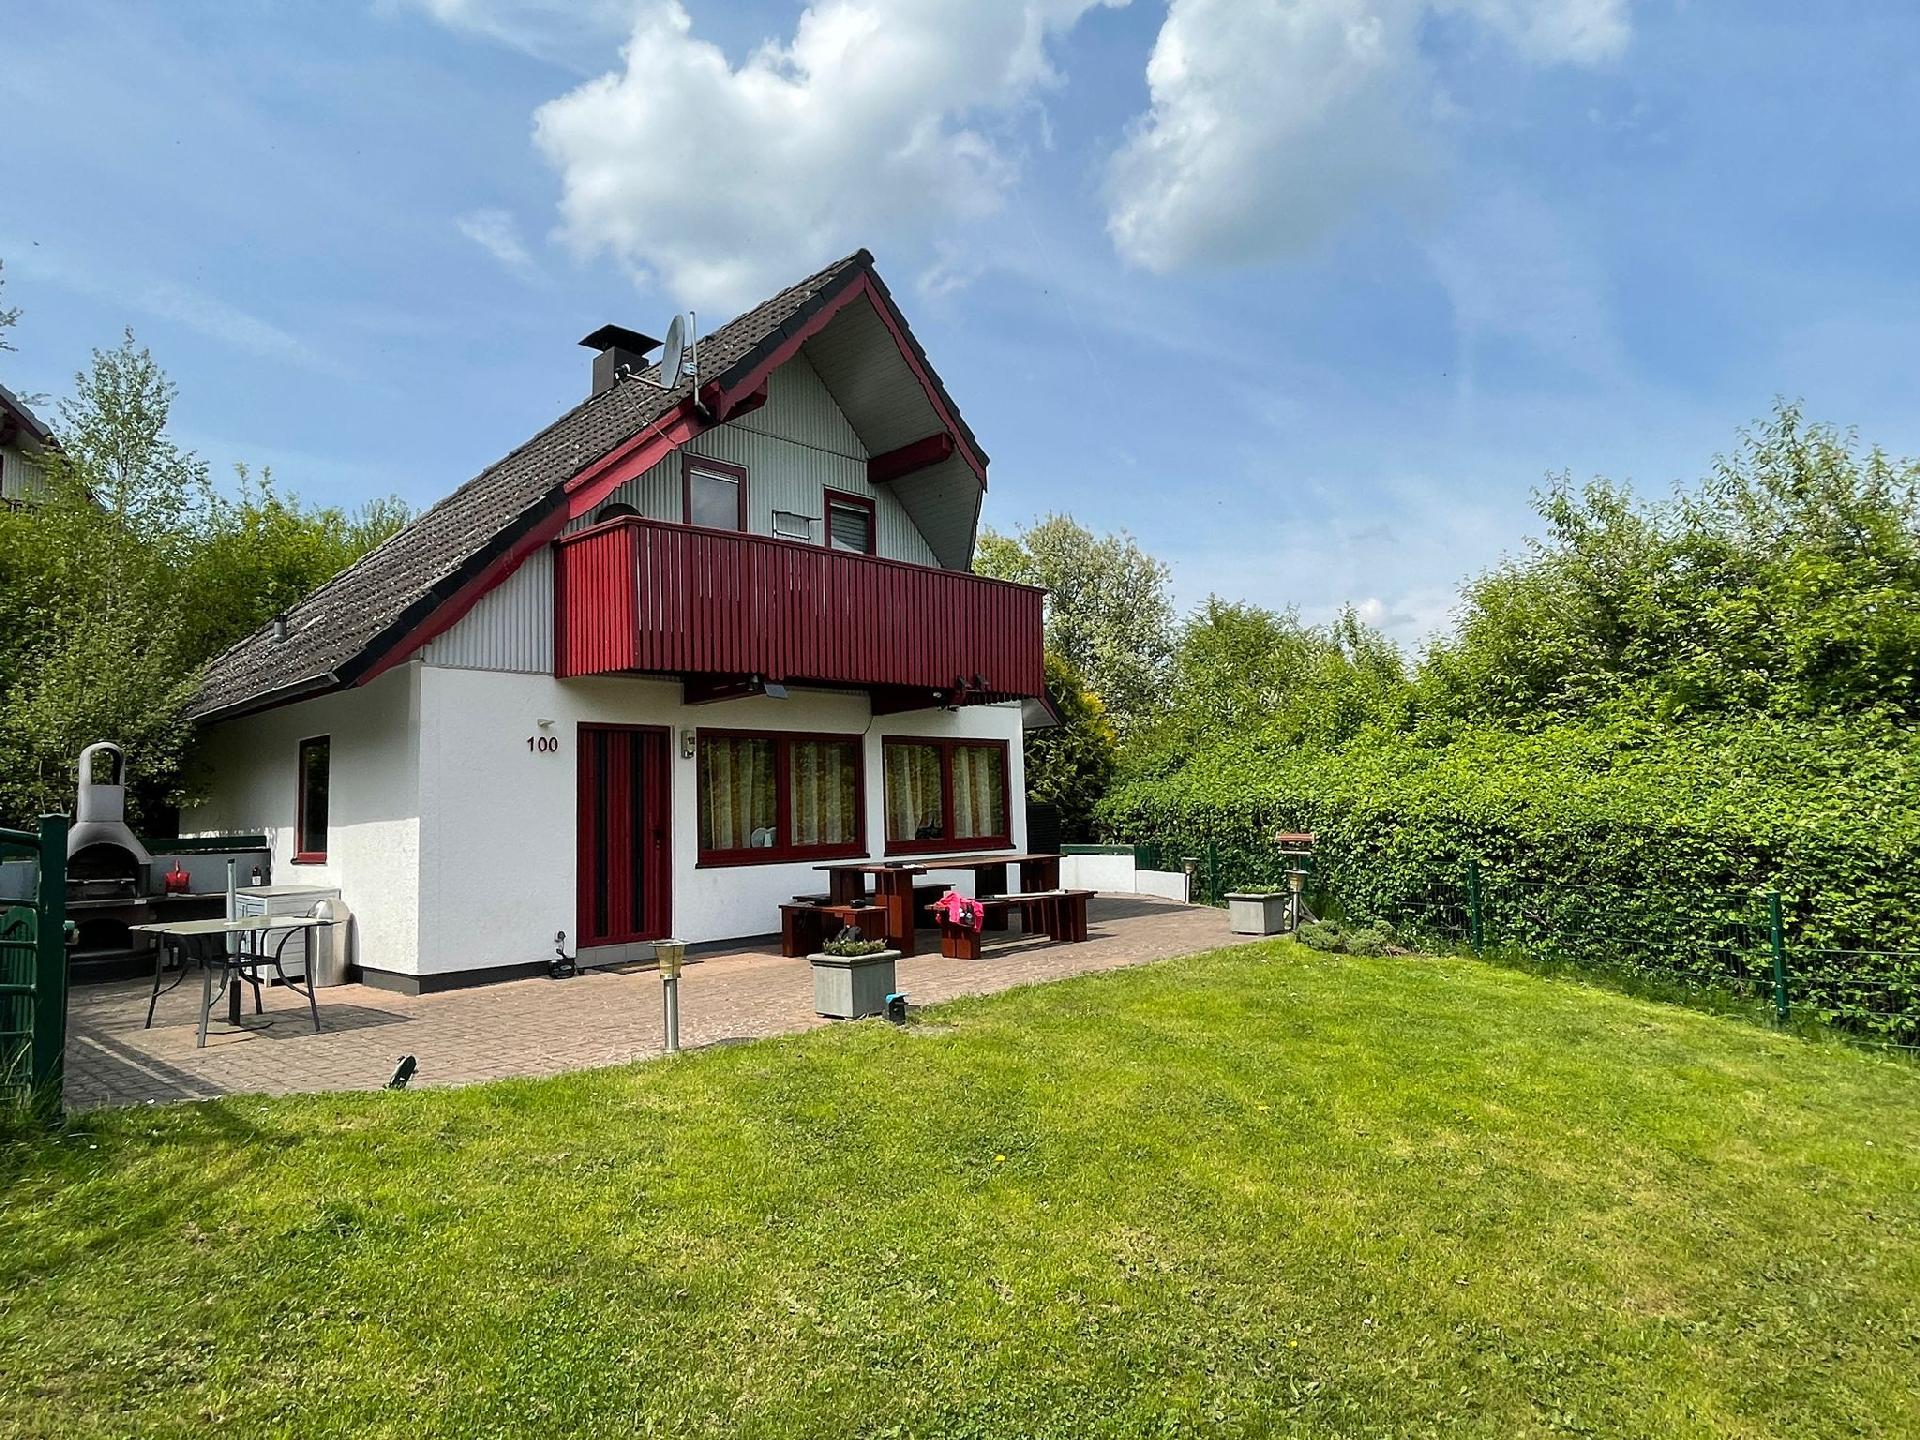 Ferienhaus in Seepark Kirchheim mit Großer T  in Deutschland